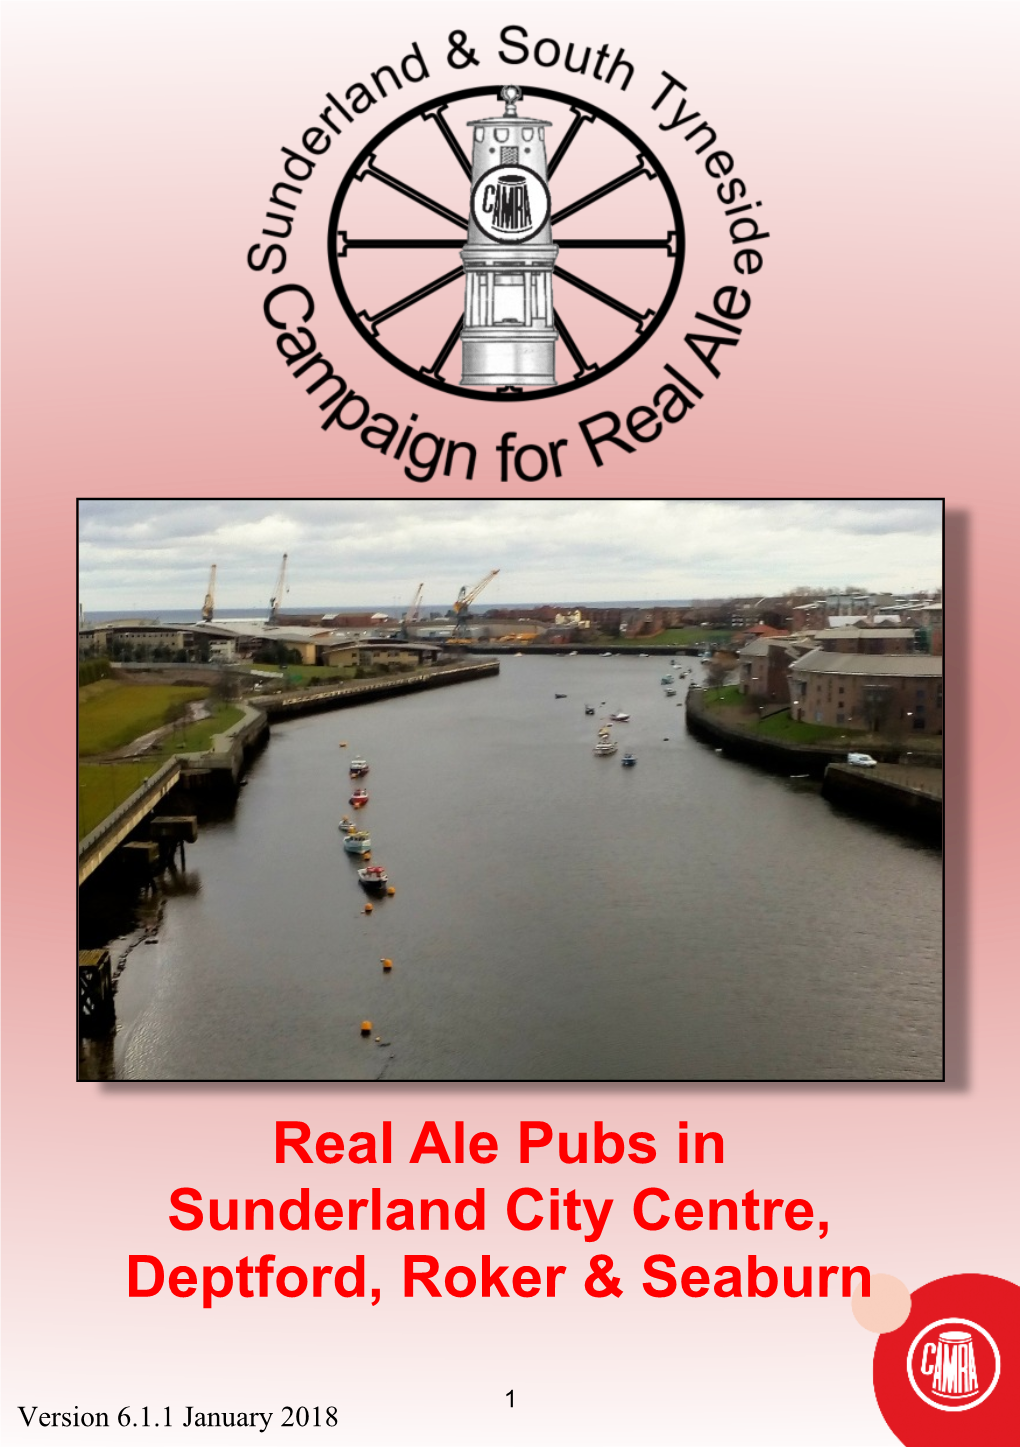 Real Ale Pubs in Sunderland City Centre, Deptford, Roker & Seaburn